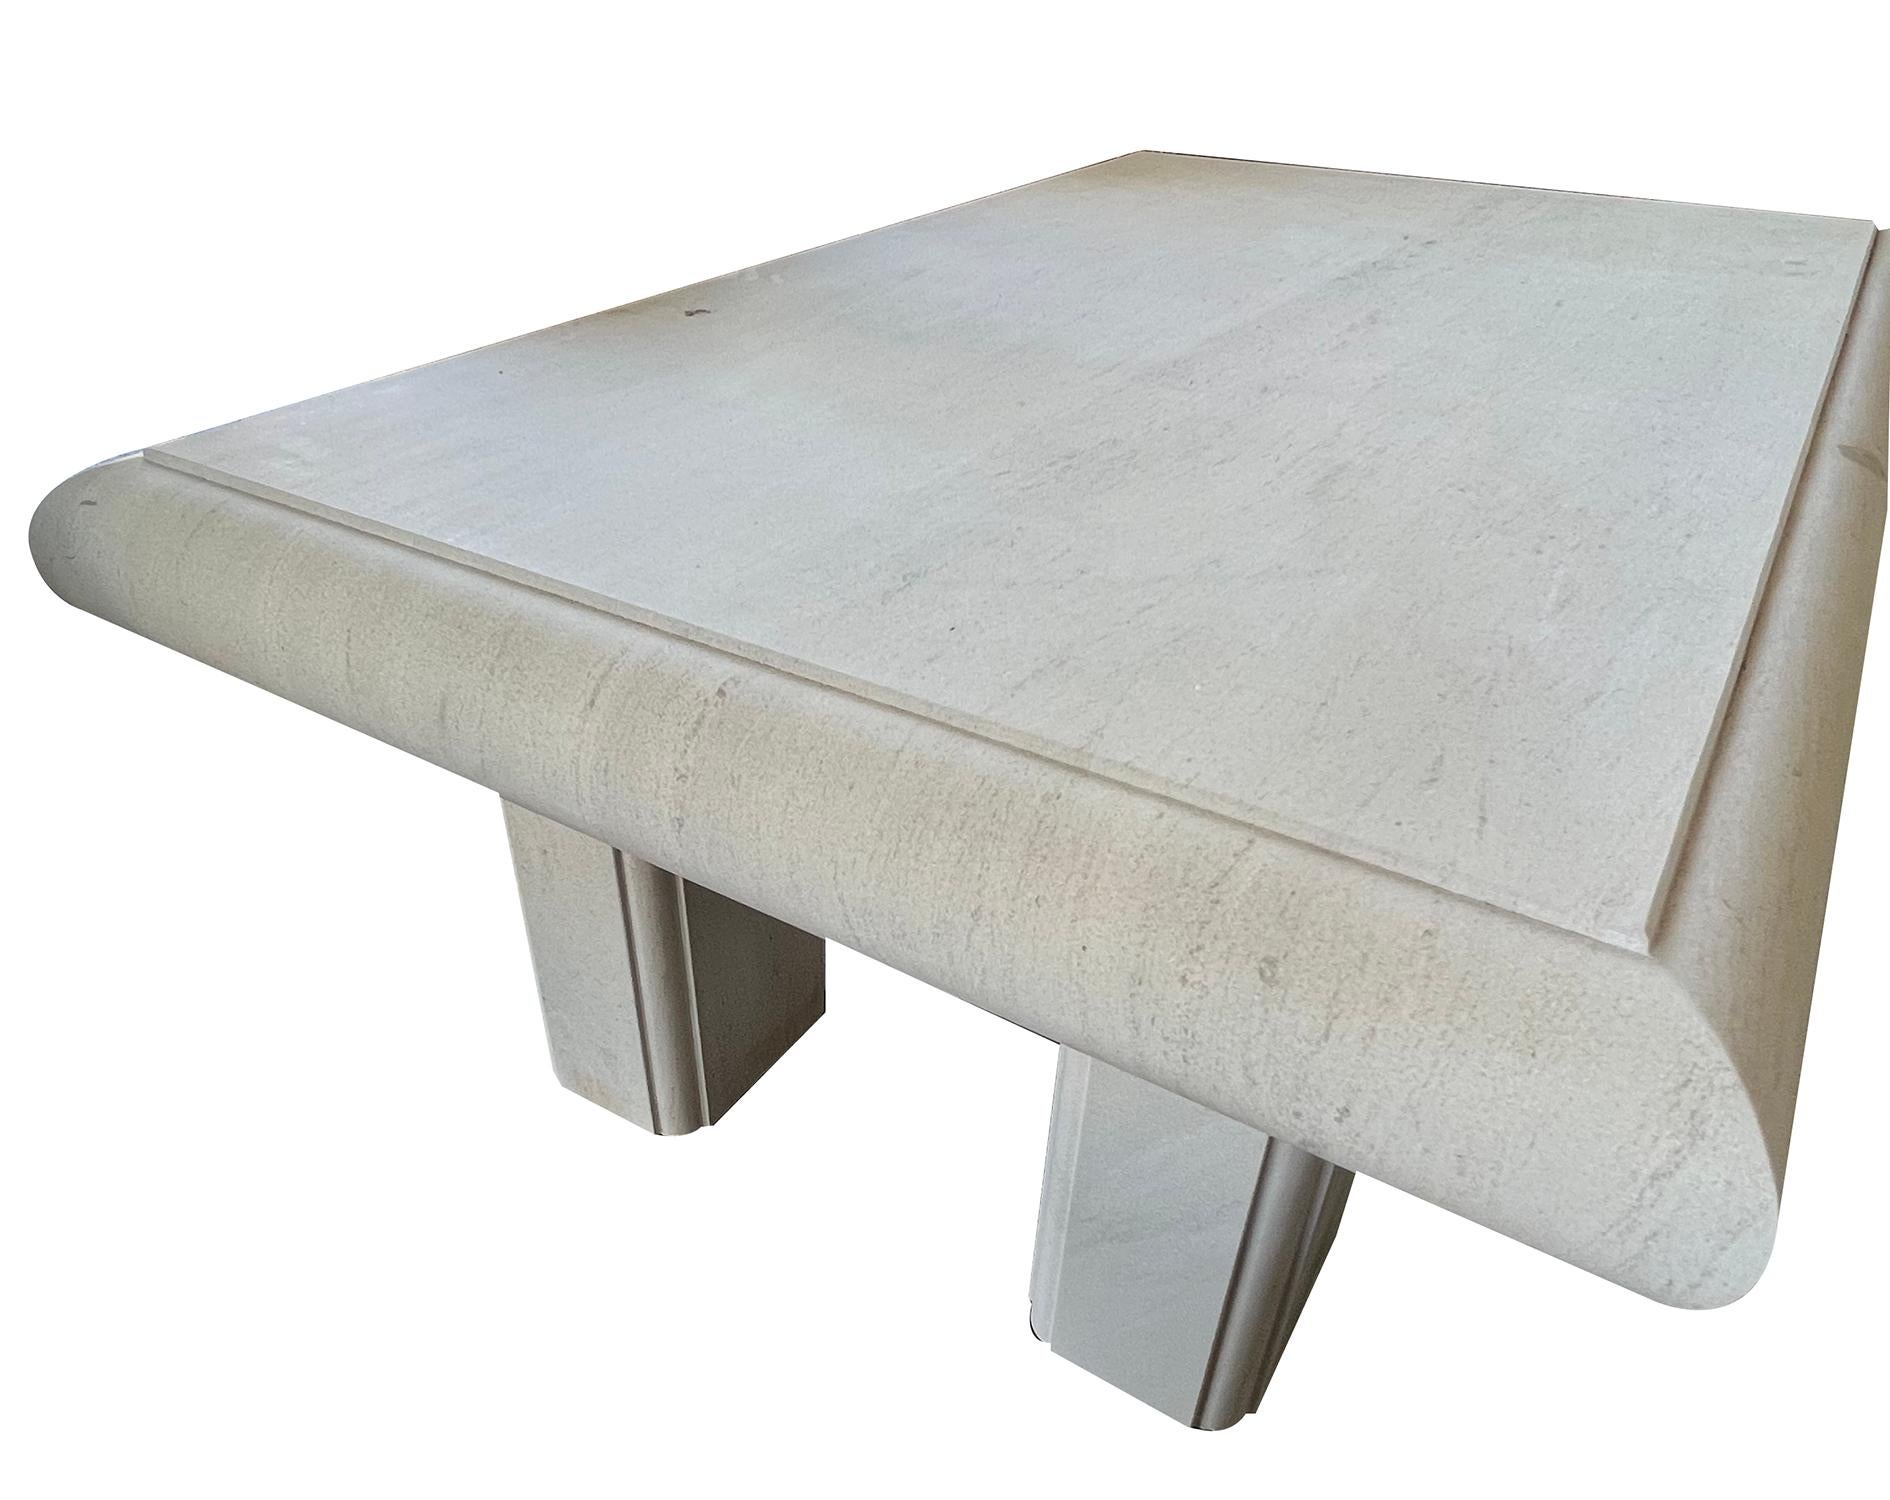 le plateau rectangulaire épais à bord arrondi repose sur 4 supports rectilignes détachés ; les tables sont fabriquées sur mesure en Belgique, ce qui entraîne des variations dans la pierre.